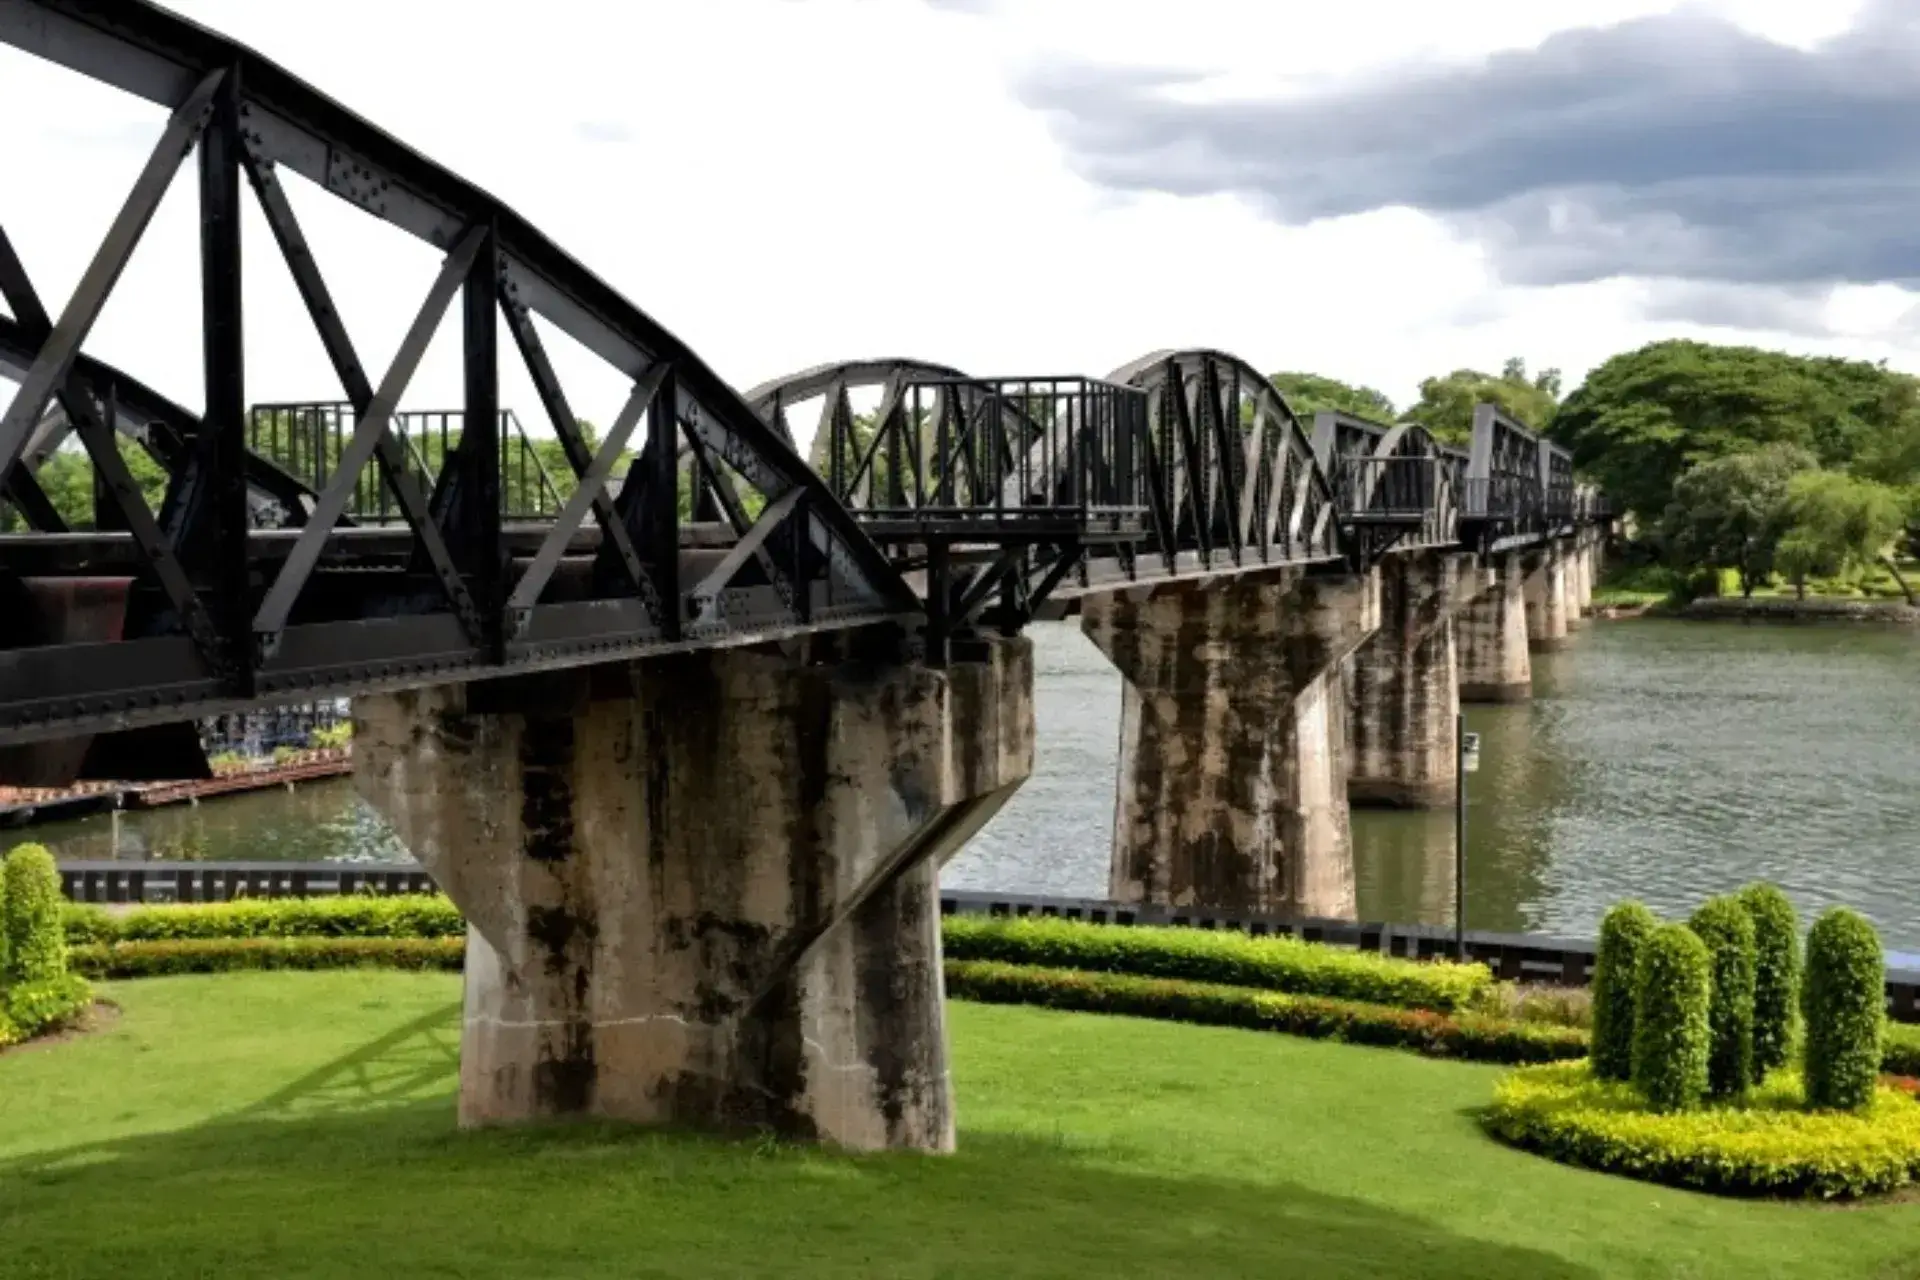 Parte del puente sobre el río Kwai de hierro en la parte superior y cemento en la inferior. Hierba en primer plano y vegetación al fondo